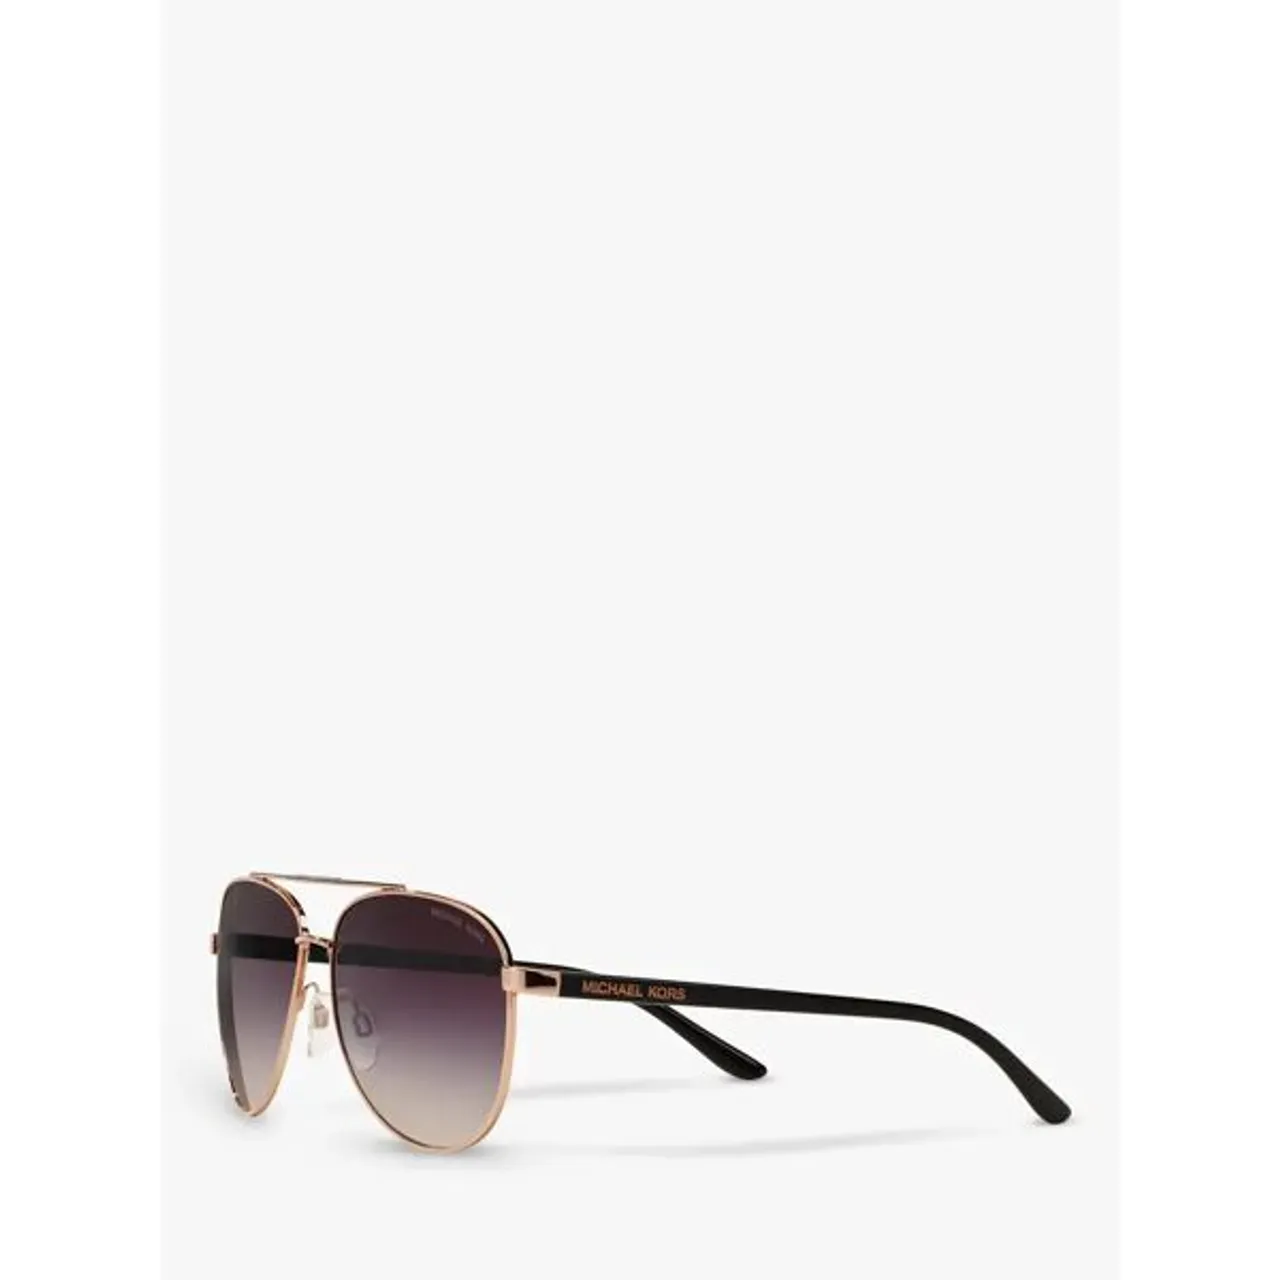 Michael Kors MK5007 Hvar I Aviator Sunglasses - Rose Gold/Grey Gradient - Female